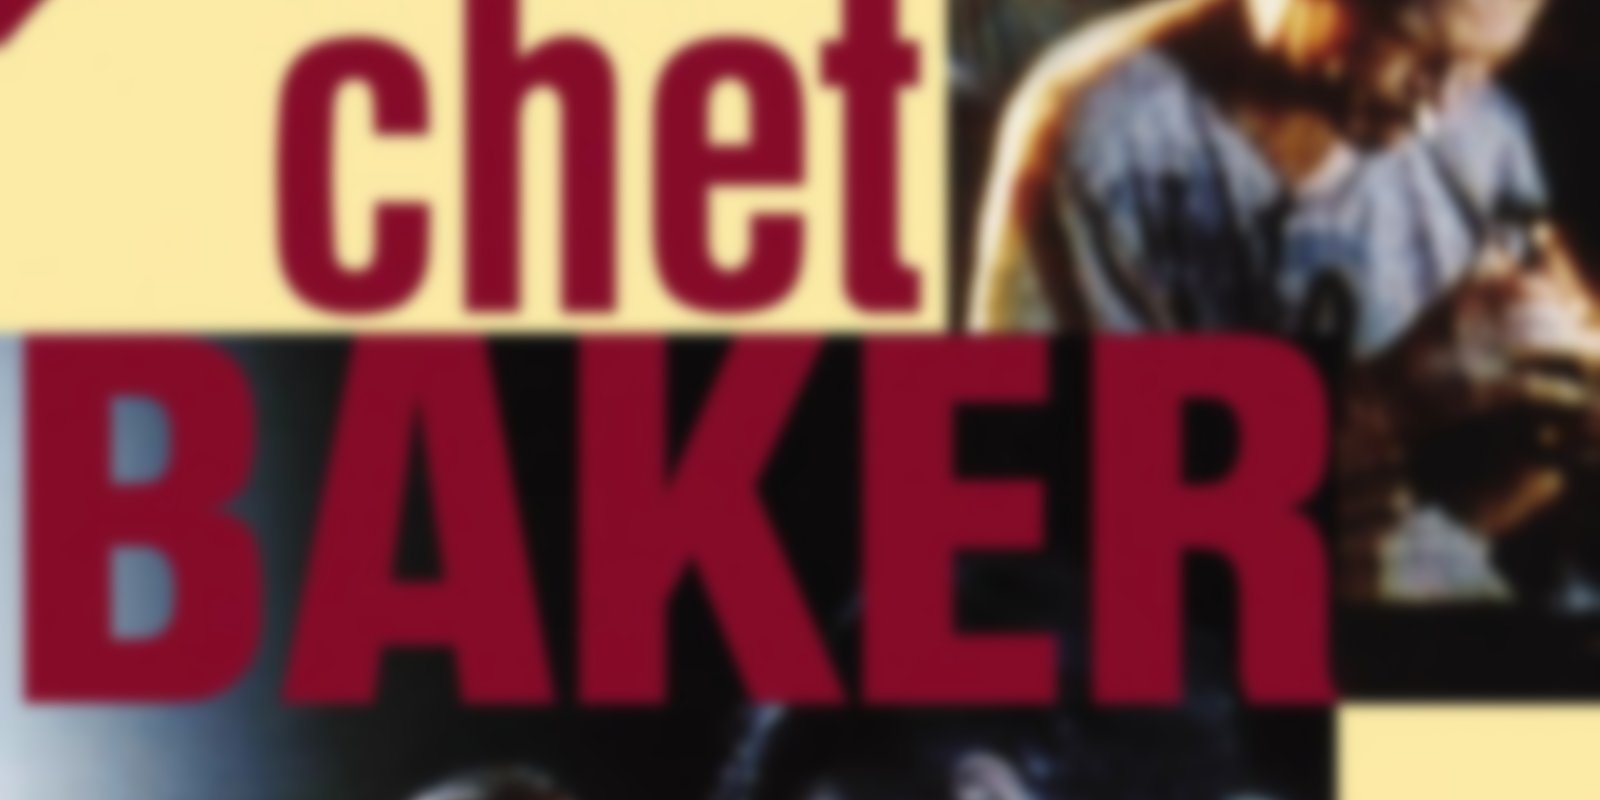 Chet Baker - Live at Ronnie Scott's